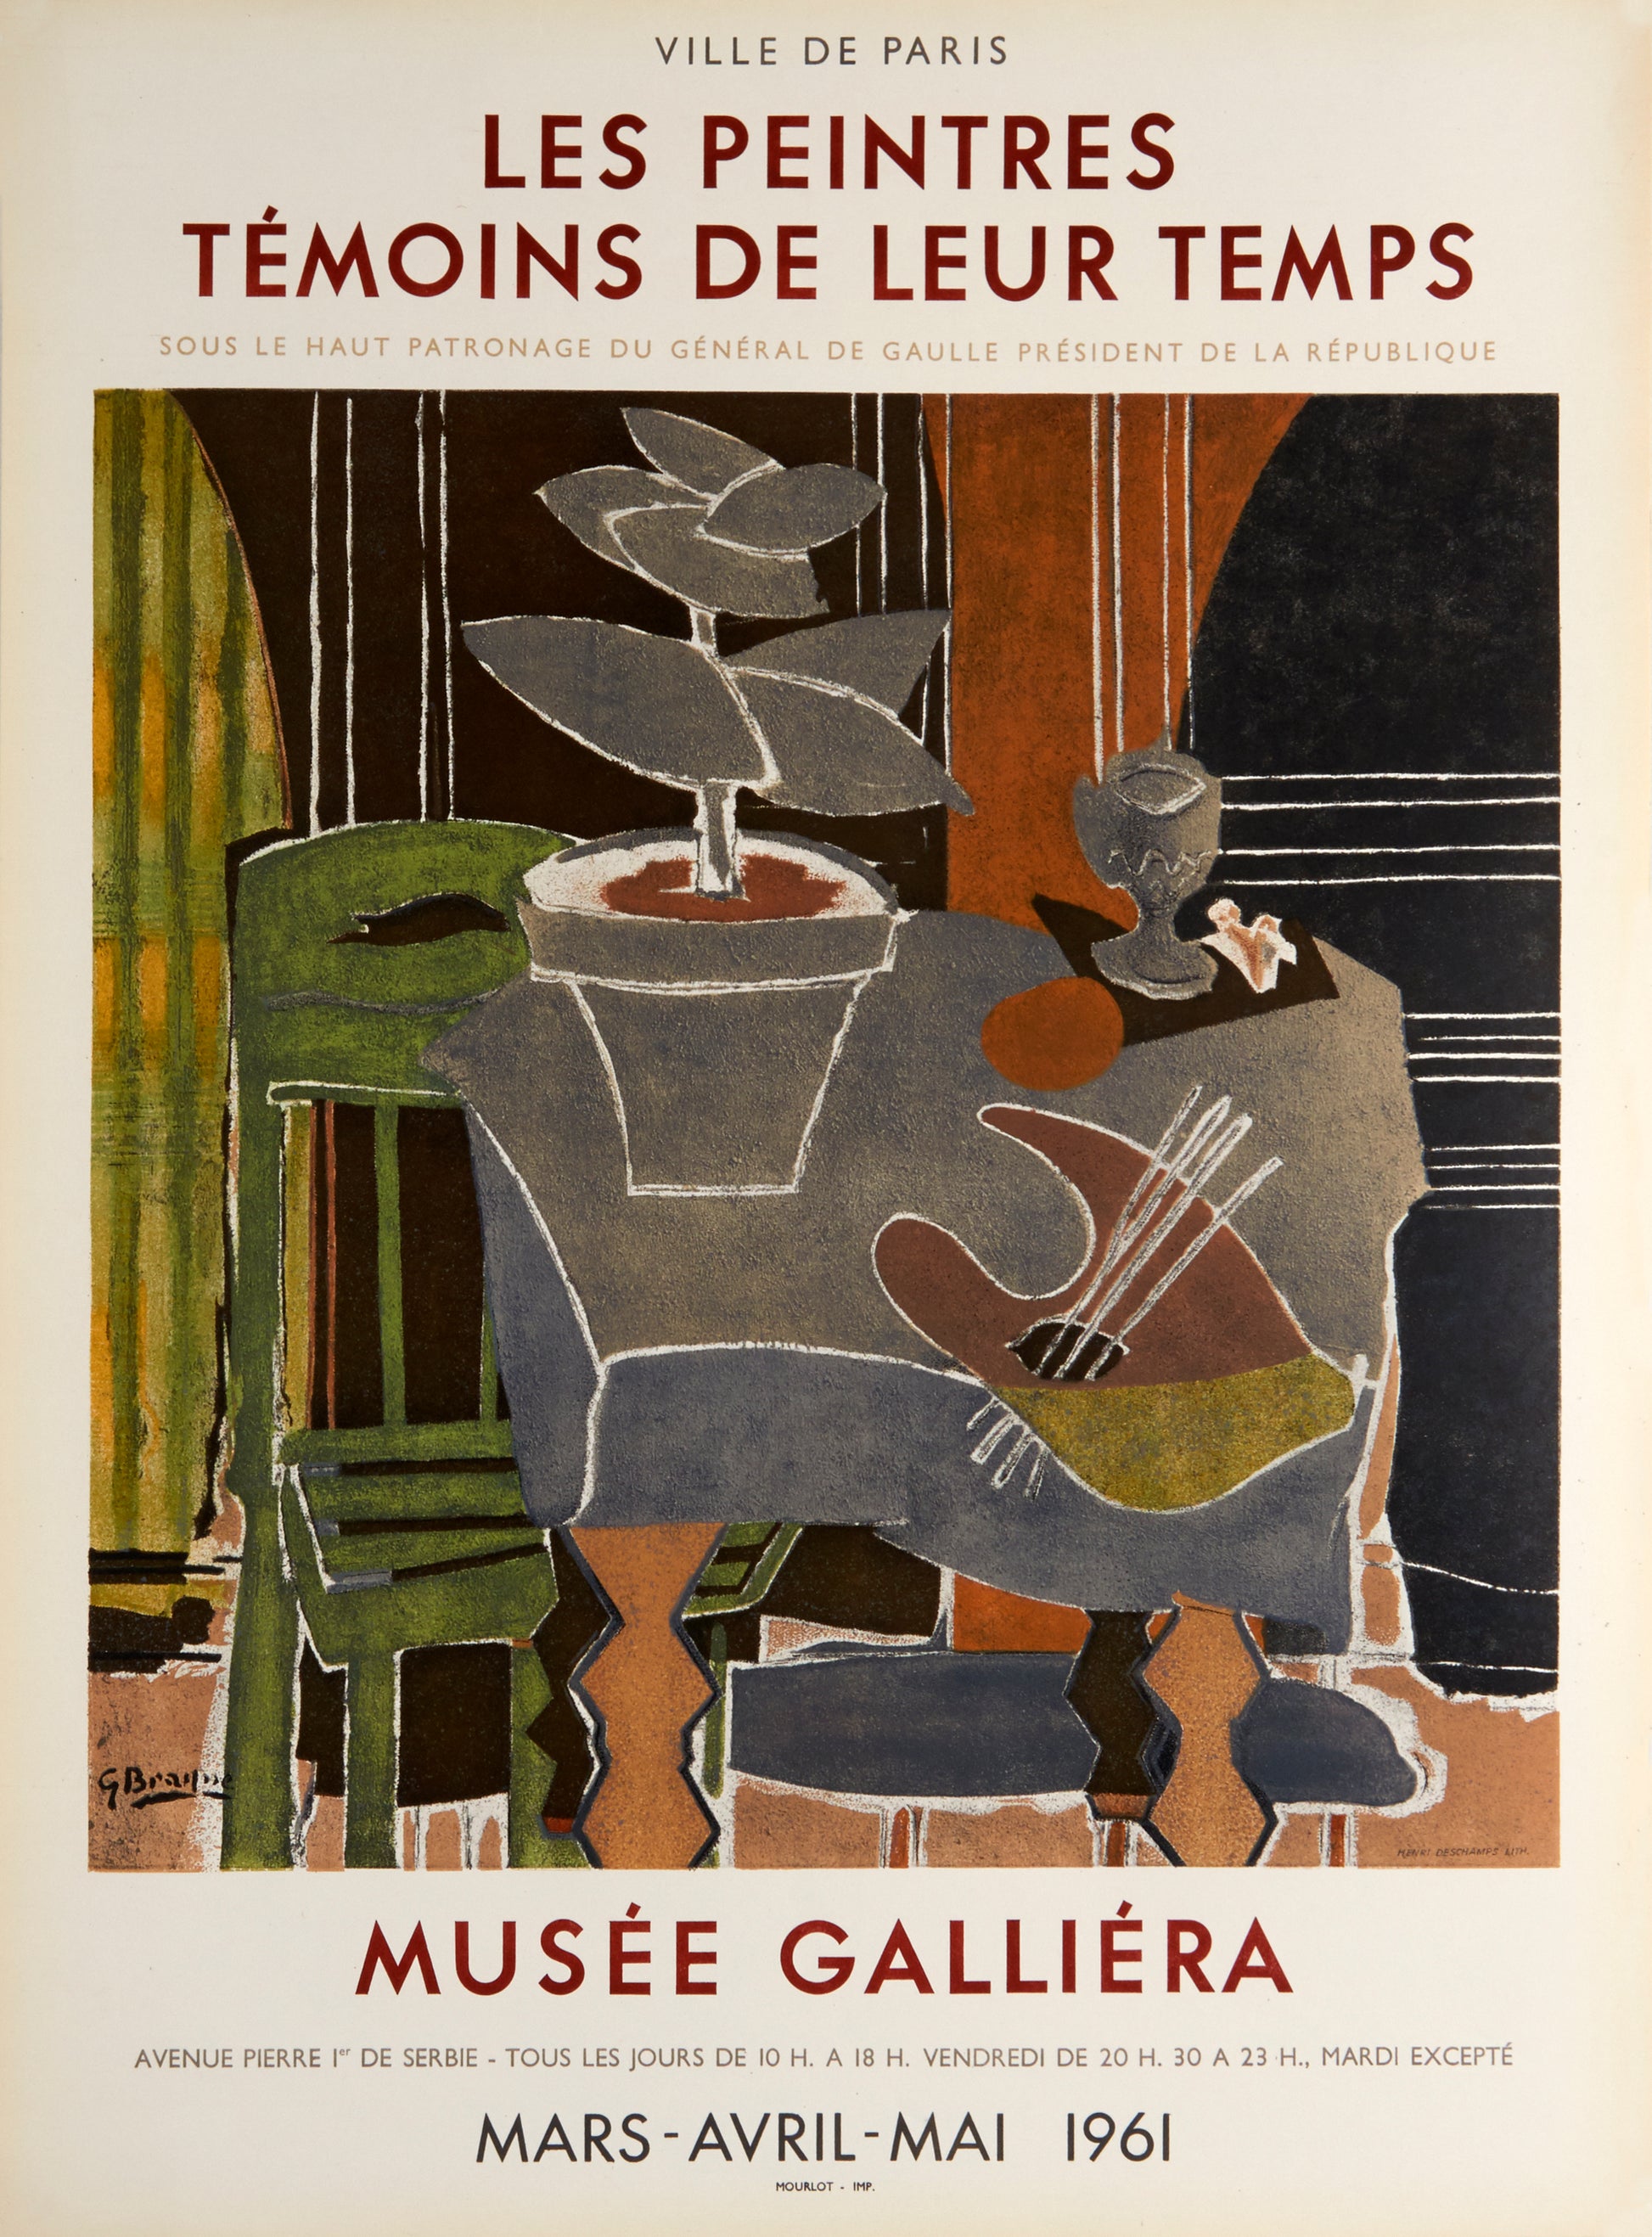 Nature Morte a la palette - Musée Galliéra (after) Georges Braque, 1961 - Mourlot Editions - Fine_Art - Poster - Lithograph - Wall Art - Vintage - Prints - Original